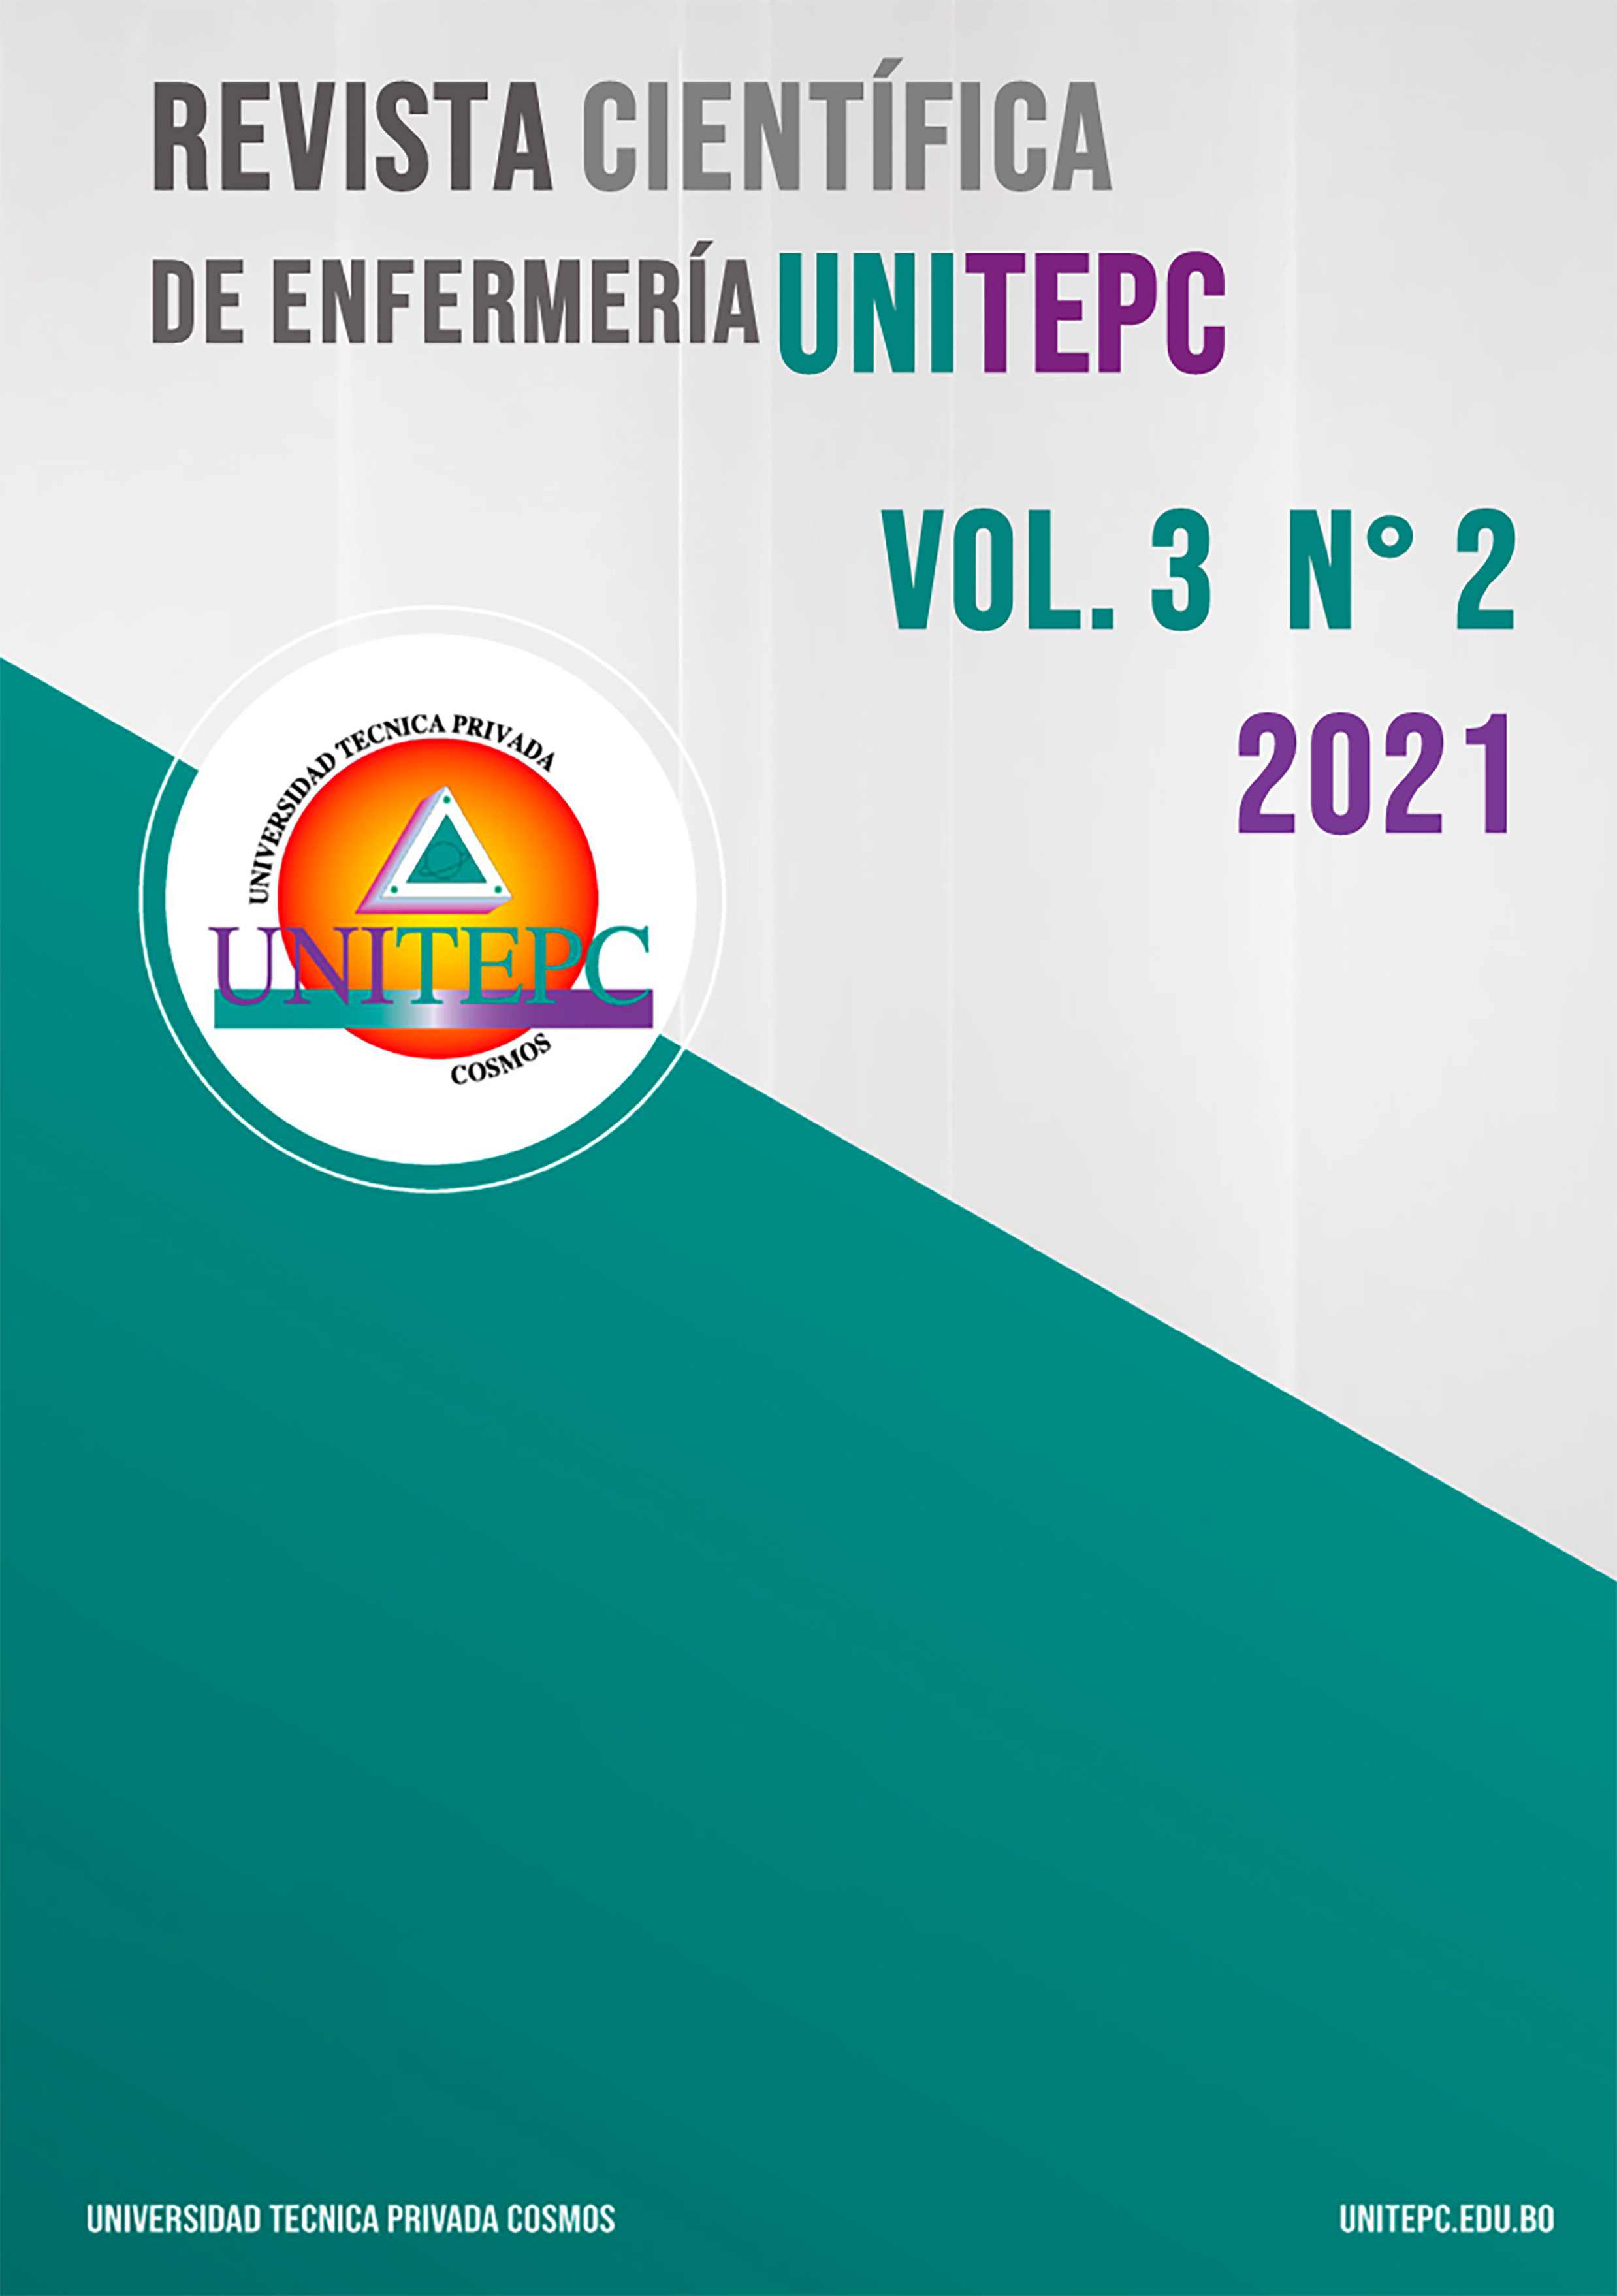 					Ver Vol. 3 Núm. 2 (2021): Revista Científica de Enfermería UNITEPC
				